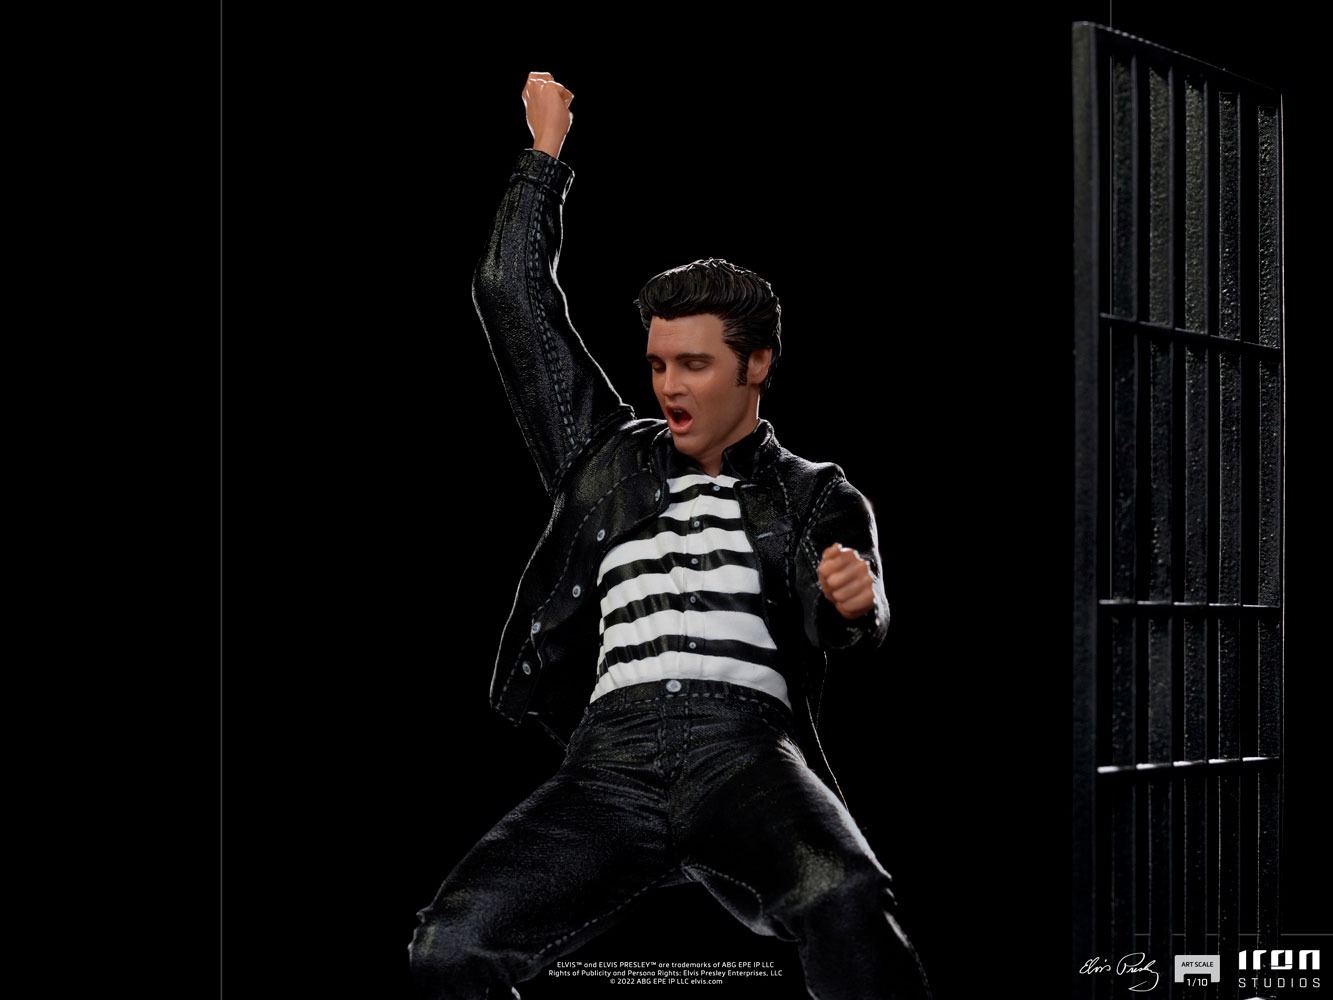 Elvis Presley (Jailhouse Rock)